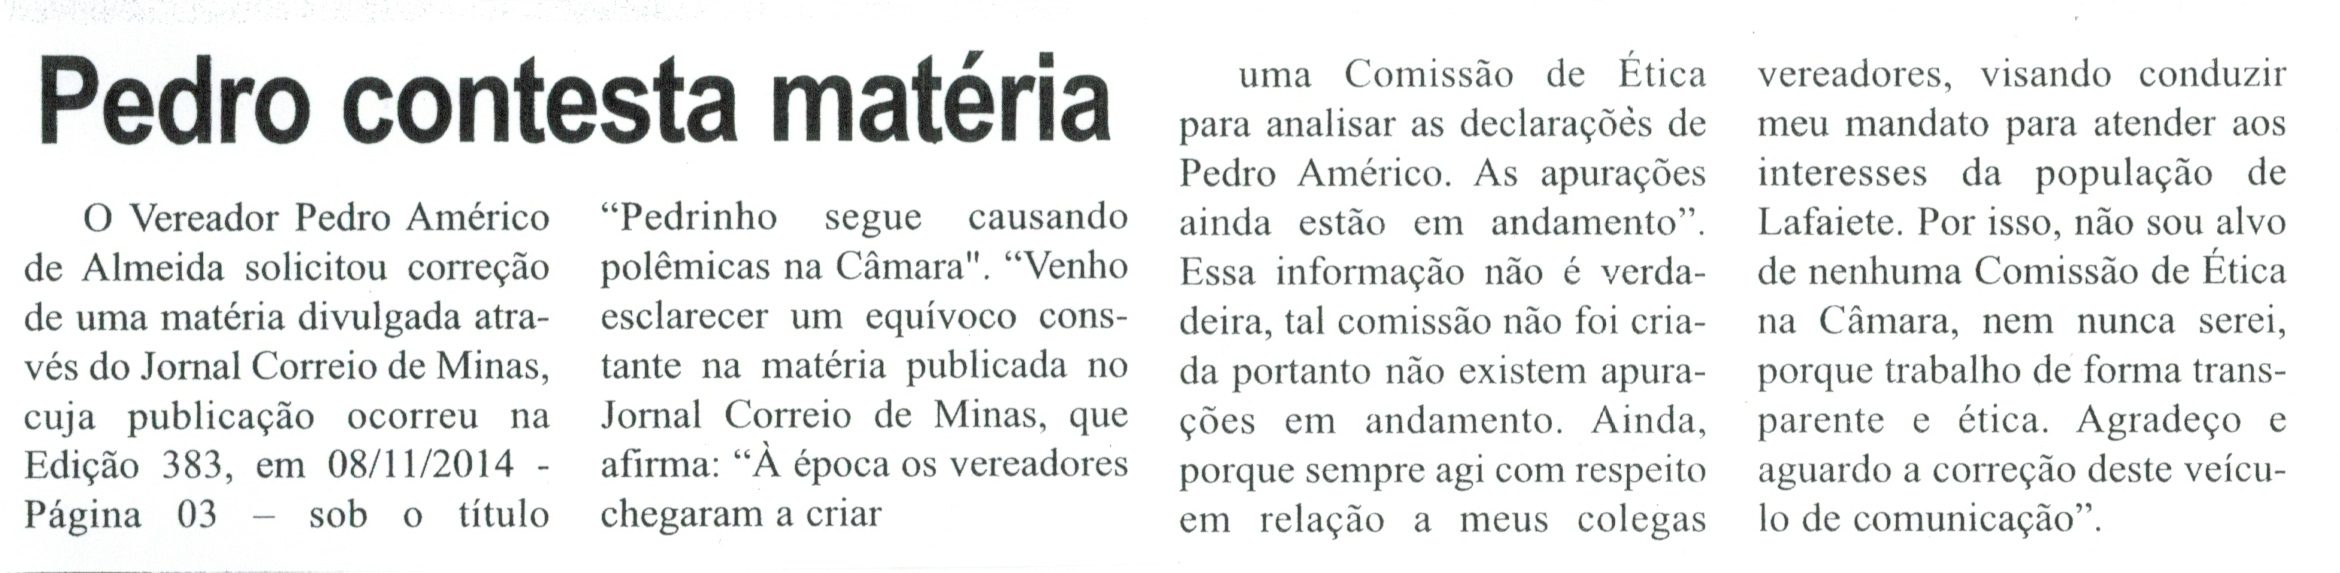  Pedro contesta matéria. Correio de Minas, Conselheiro Lafaiete, 29 nov. 2014, p. 3.